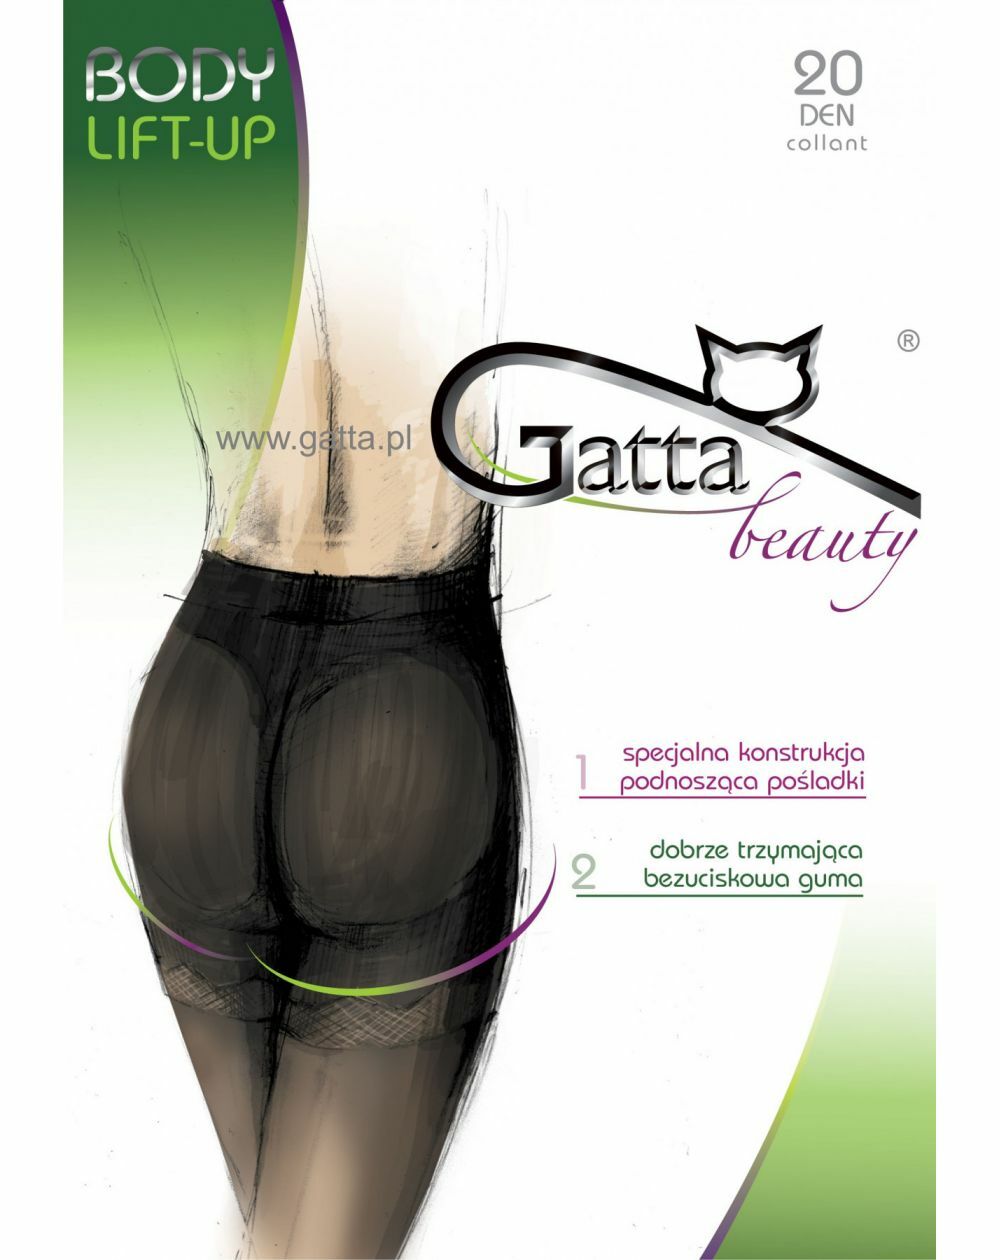 Gatta Body Lift-up Tights 20 den 2-4